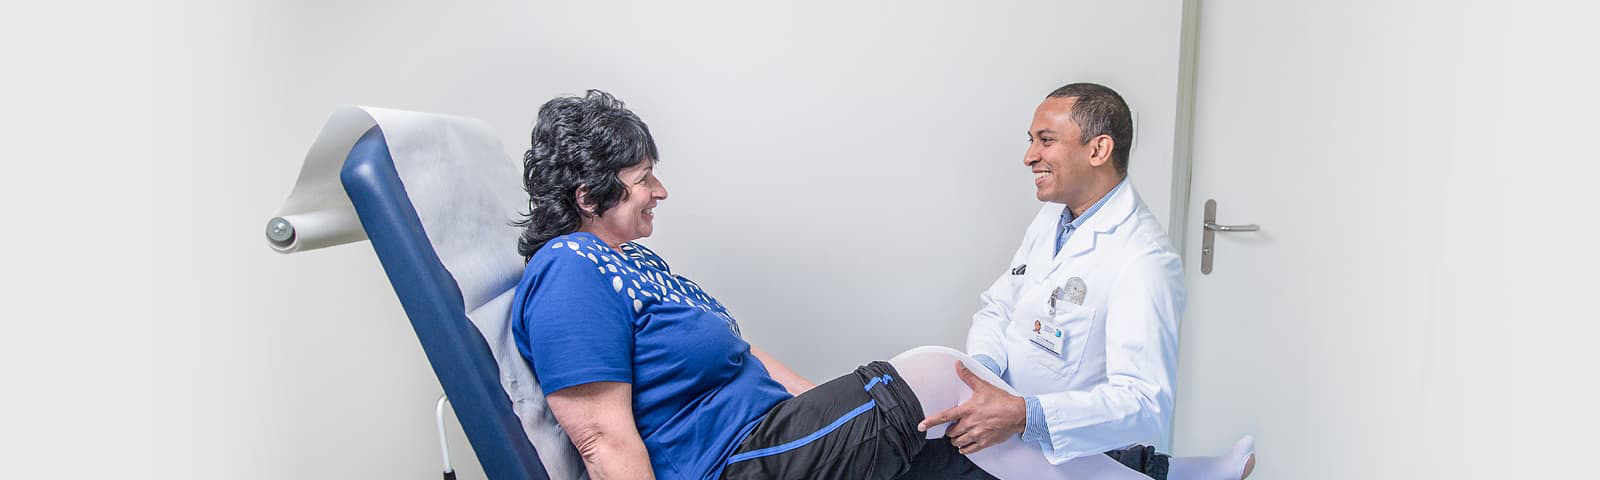 Dr. med. Daniel de Menezes im Gespräch mit einer Patientin